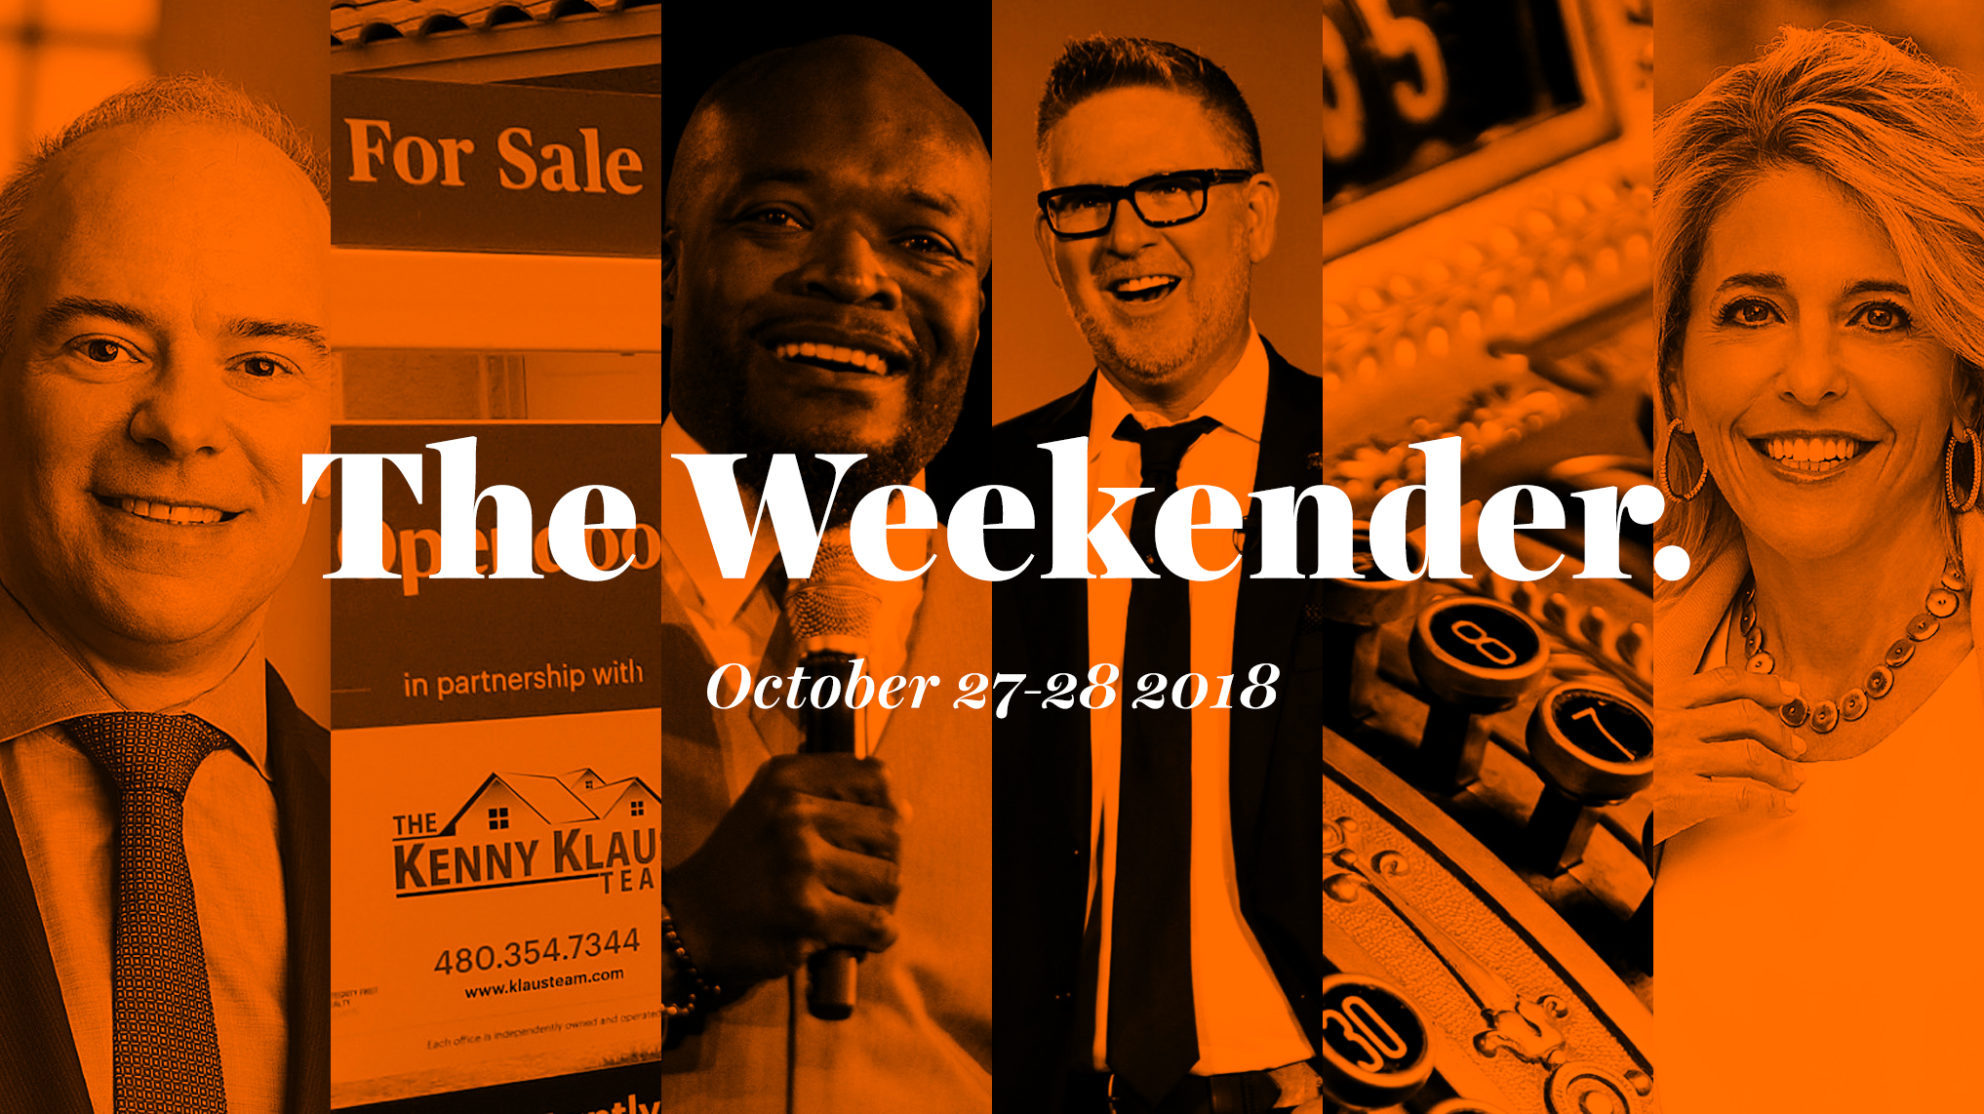 The Inman Weekender, October 27-28, 2018